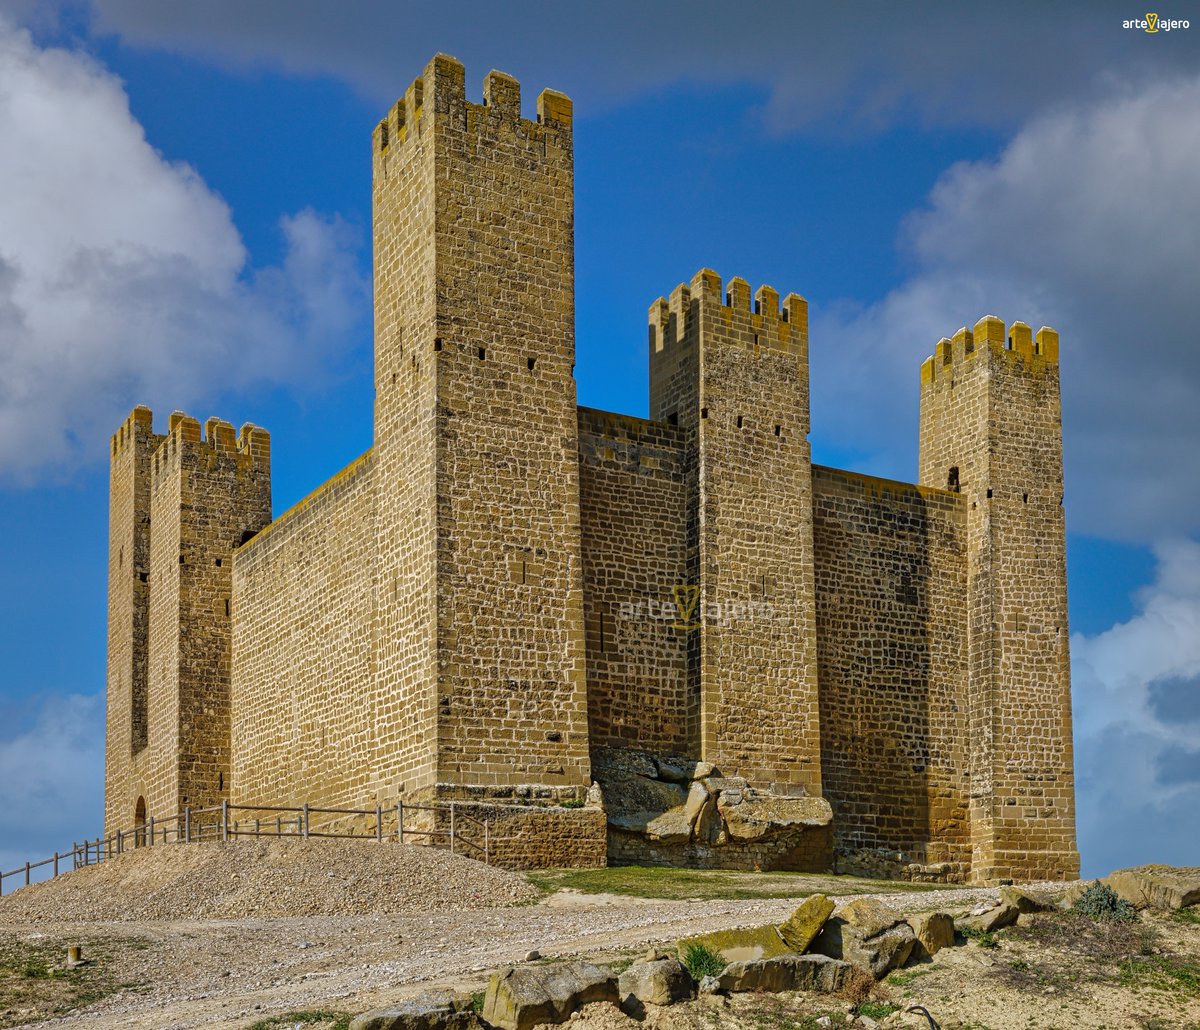 Castillo de Sádaba (Zaragoza), una de las fortalezas medievales mejor conservadas de #Aragón. Las primeras noticias del castillo se remontan al año 1125 aunque su fábrica corresponde al S. XIII #FelizMiercoles #BuenosDias